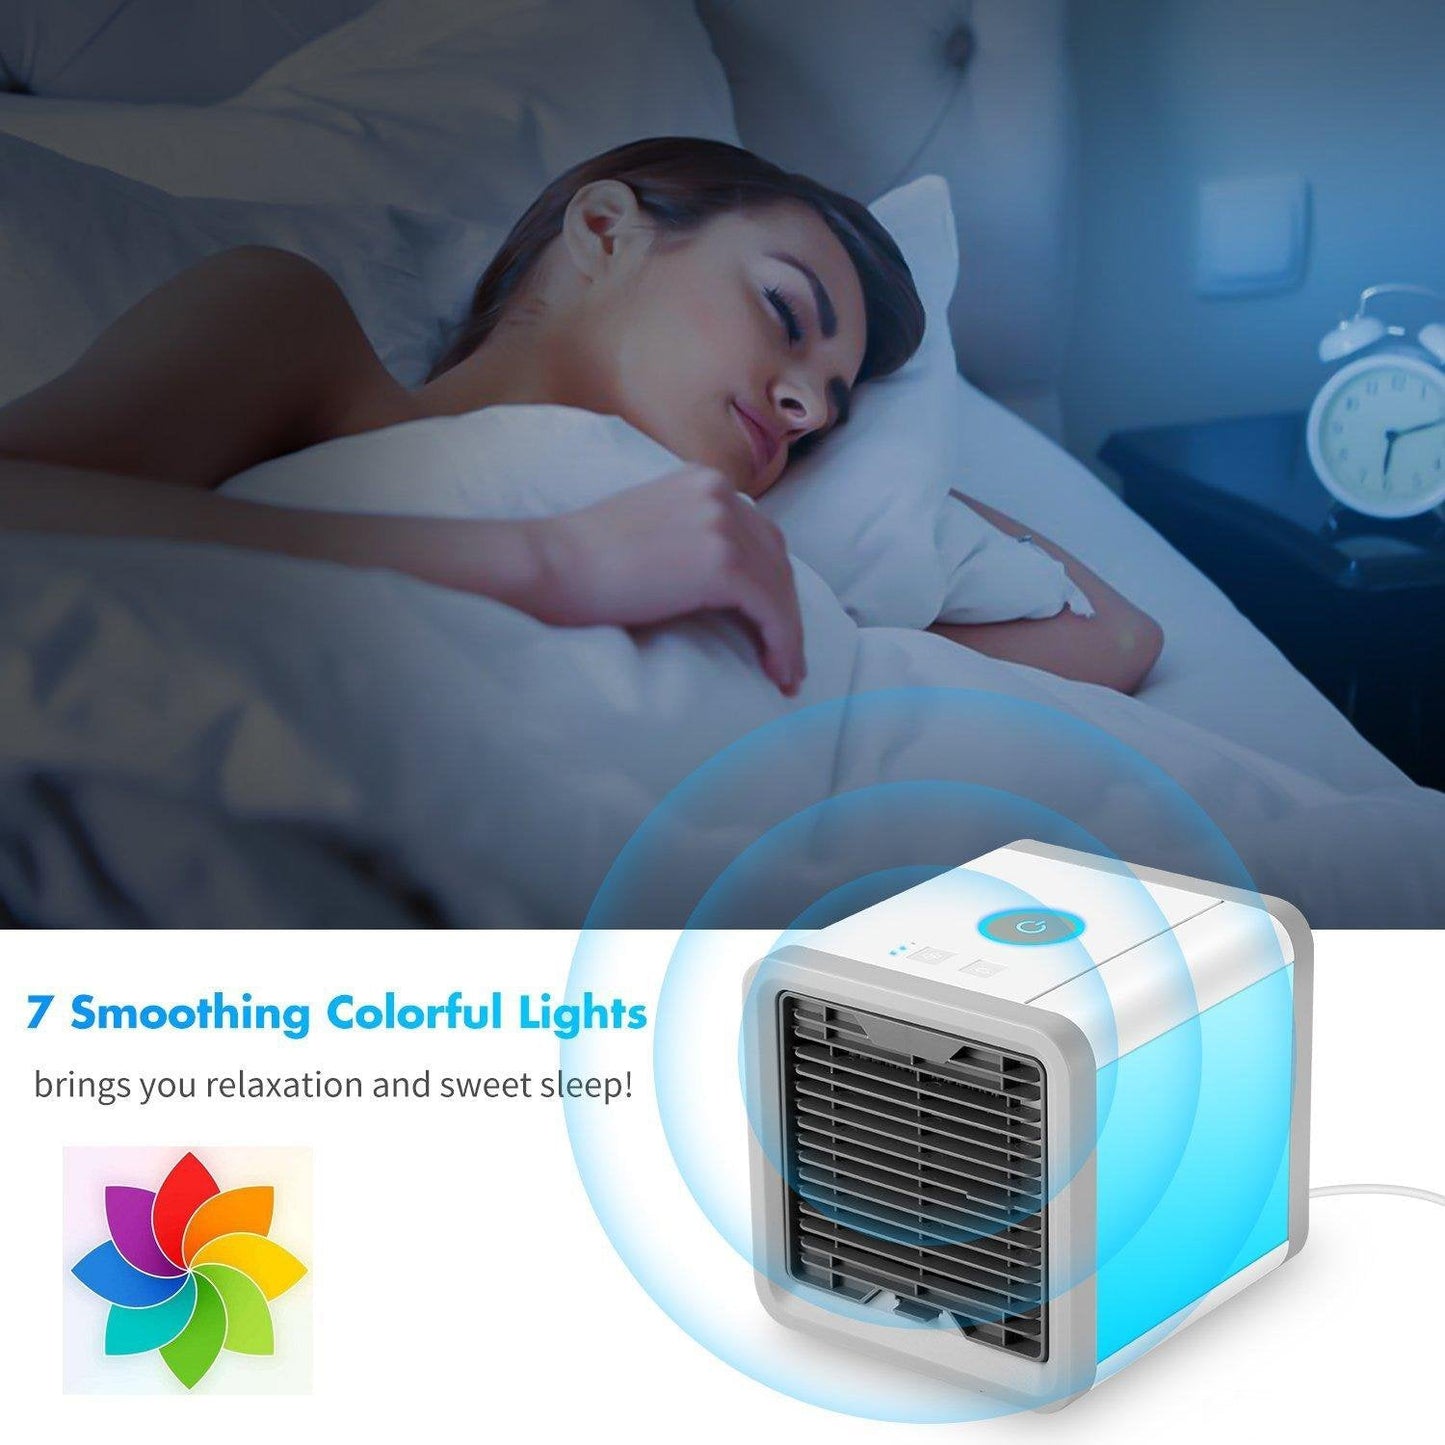 COMLIFE 3 في 1 مبرد هواء مساحة شخصية، مرطب ومنقي، مروحة مكيف هواء سطح المكتب مع 3 سرعات و7 ألوان إضاءة ليلية LED